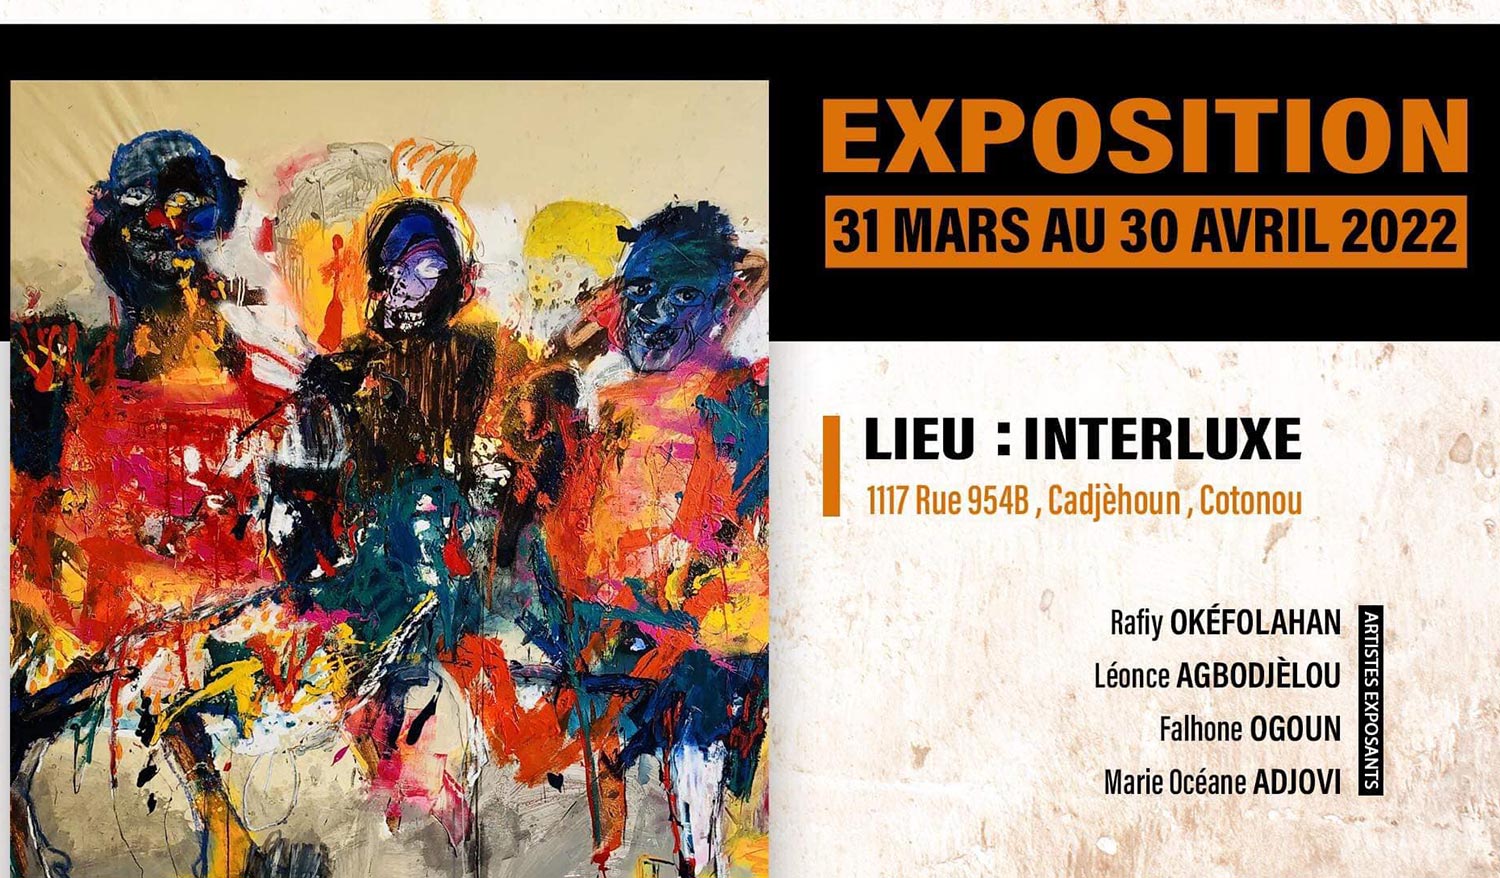 « Splendide Bénin », l'exposition tout feu tout flamme initiée par quatre jeunes artistes béninois